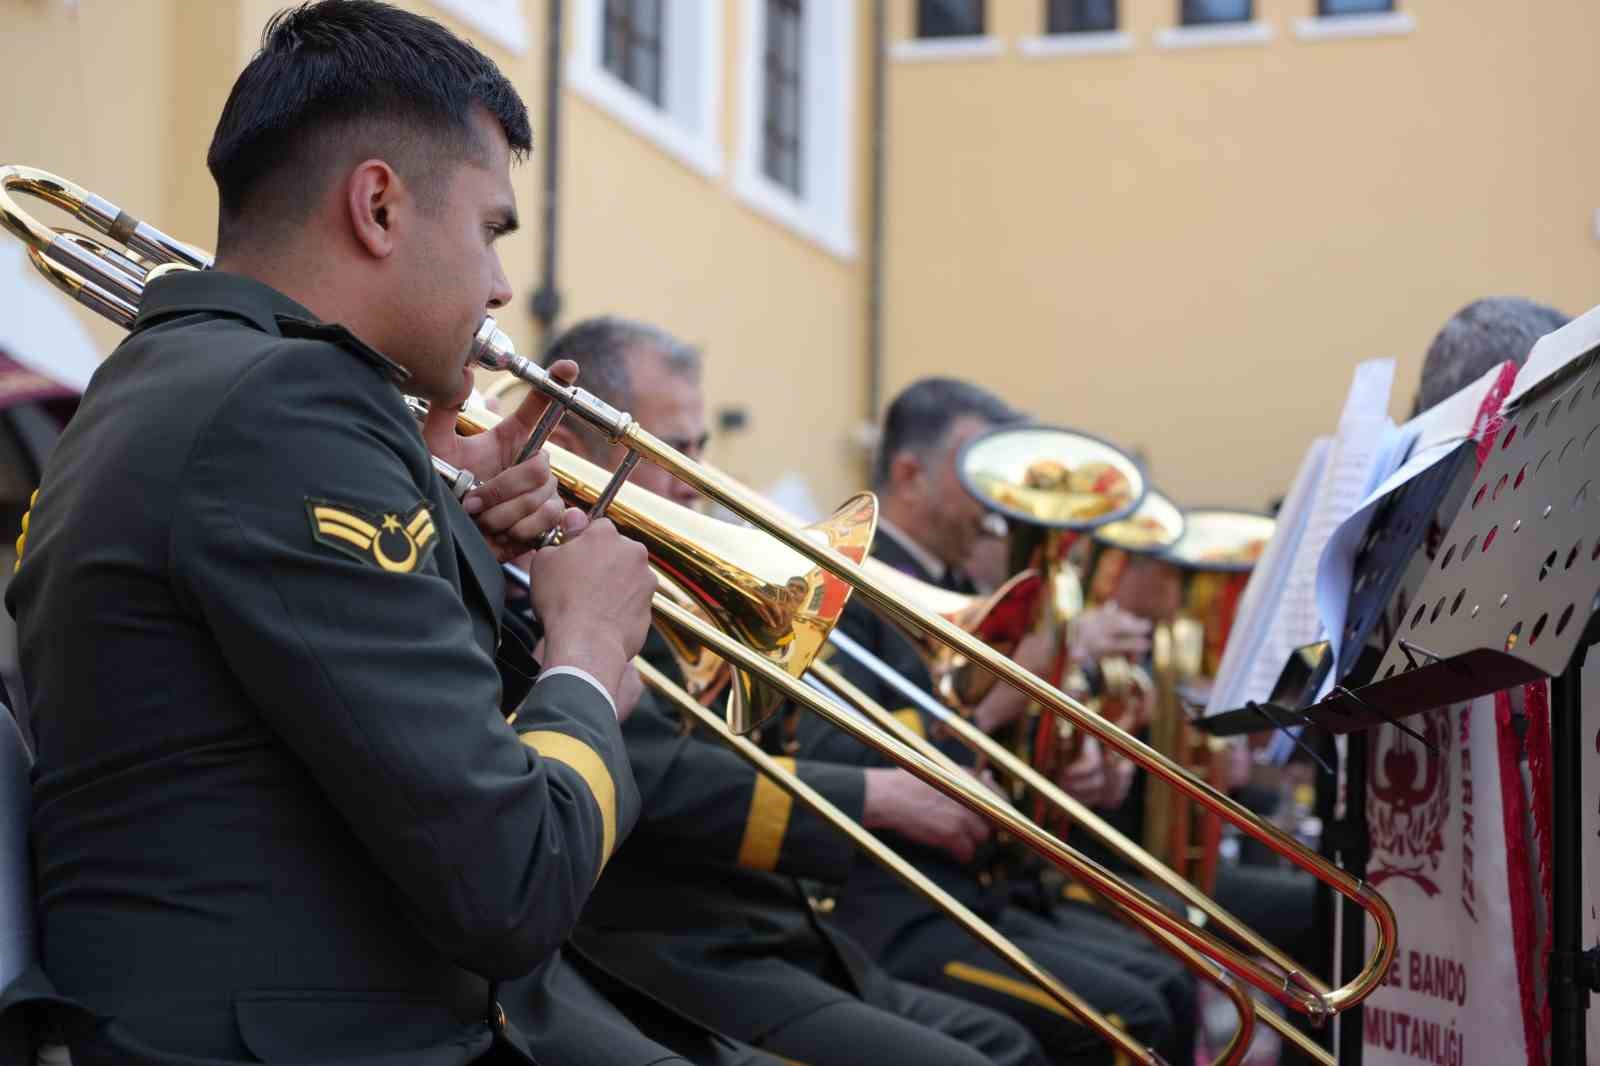 Askeri bandodan 19 Mayıs konseri
